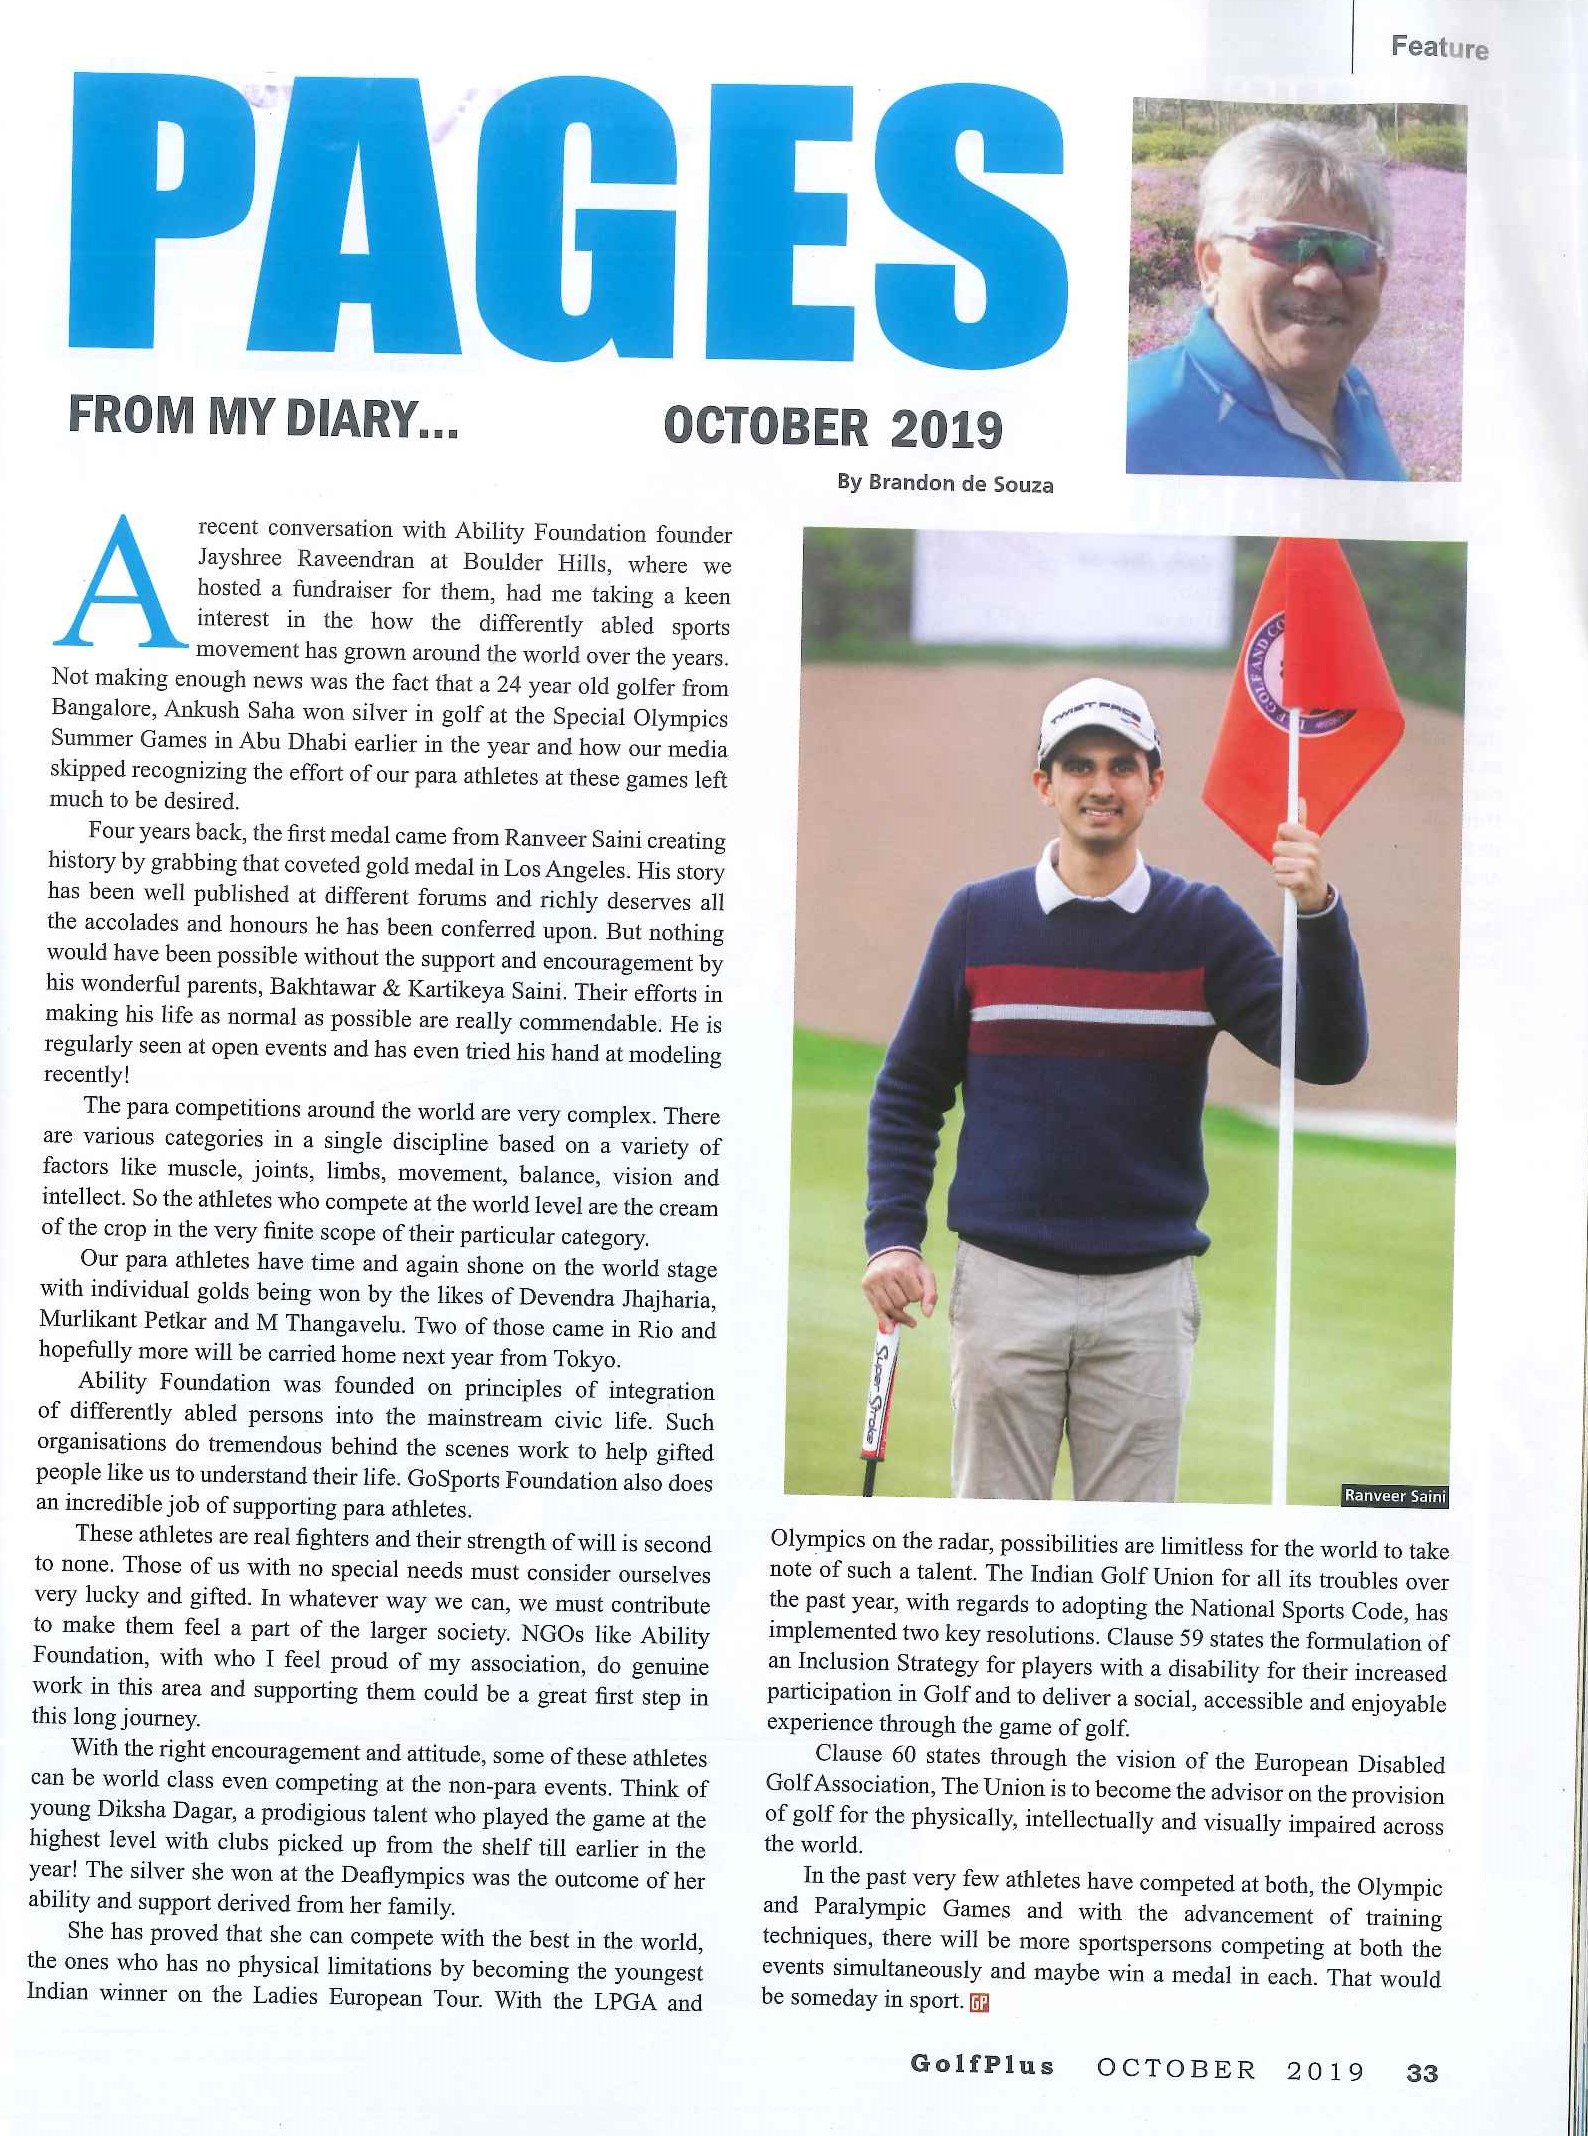 Ranveer Saini featured in ‘Golf Plus magazine’ in October edition 2019.